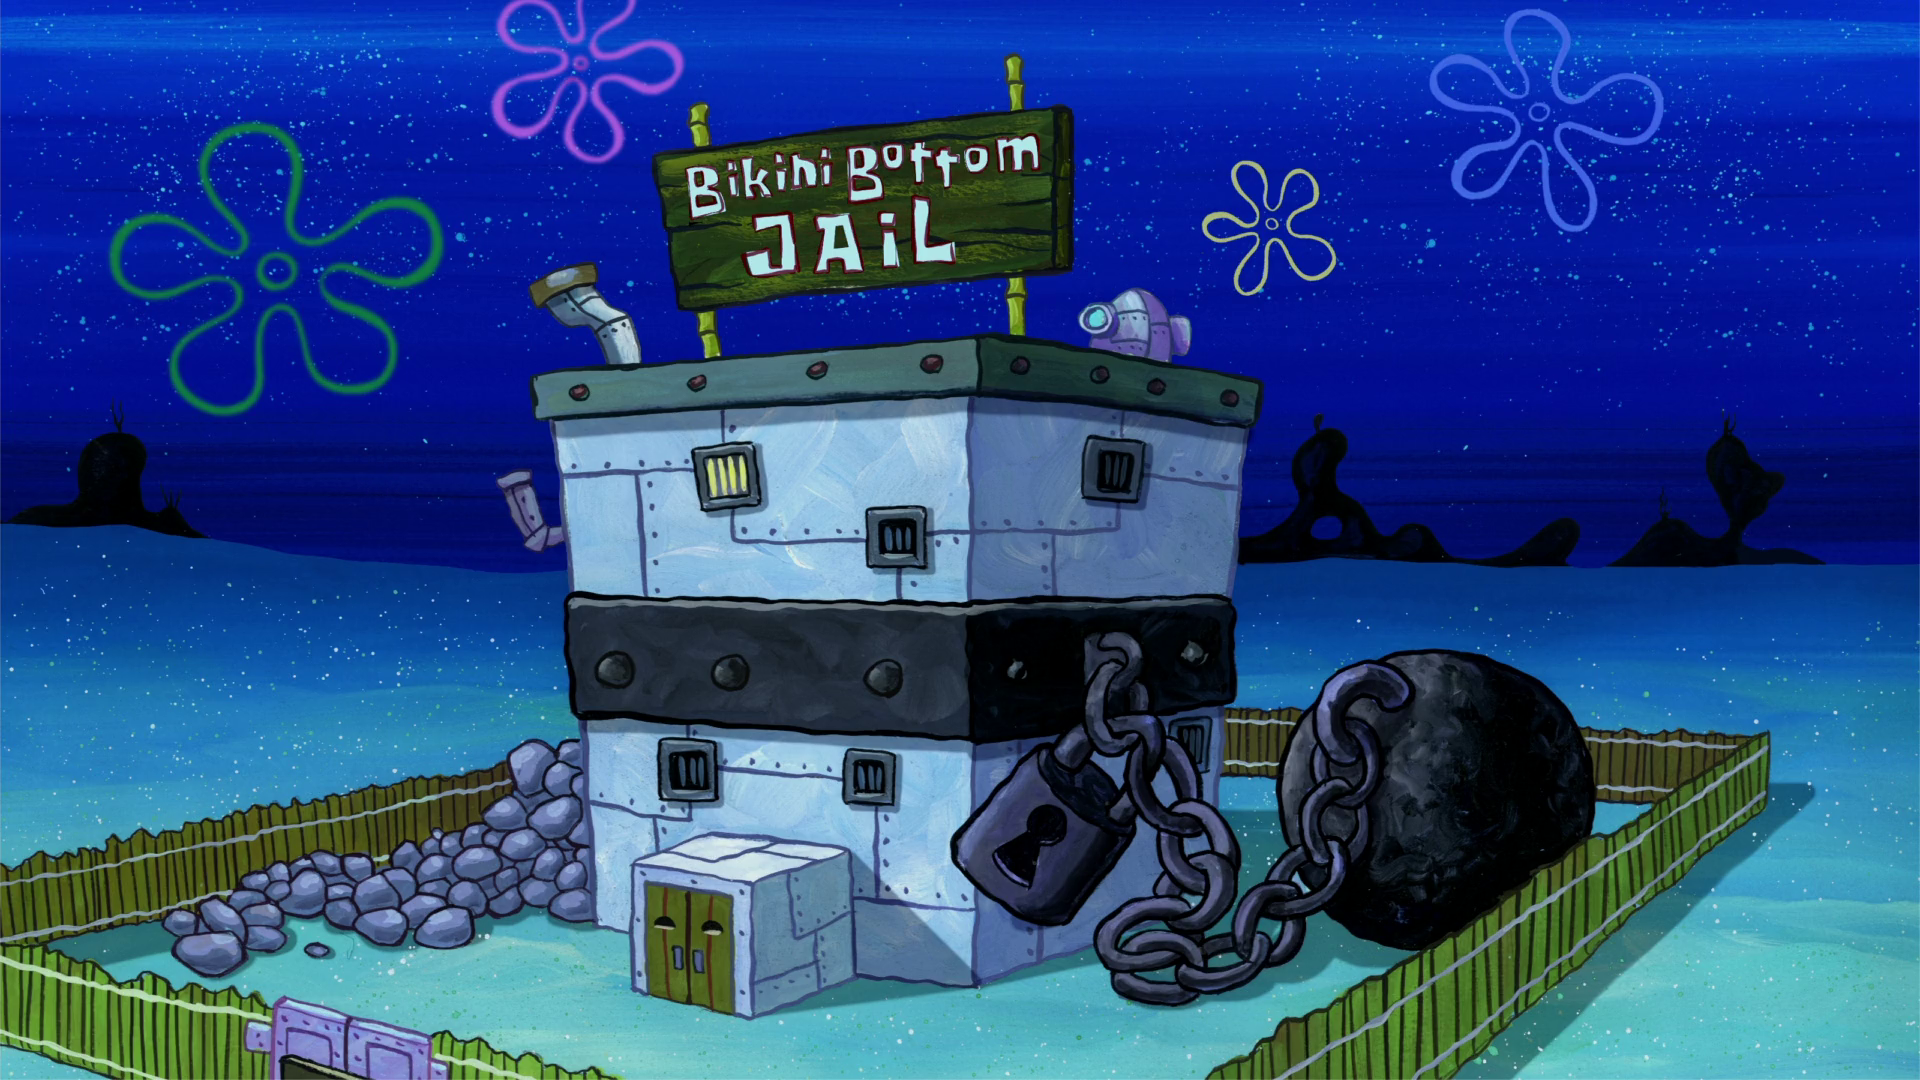 Bikini Bottom Jail | Encyclopedia SpongeBobia | FANDOM powered by Wikia